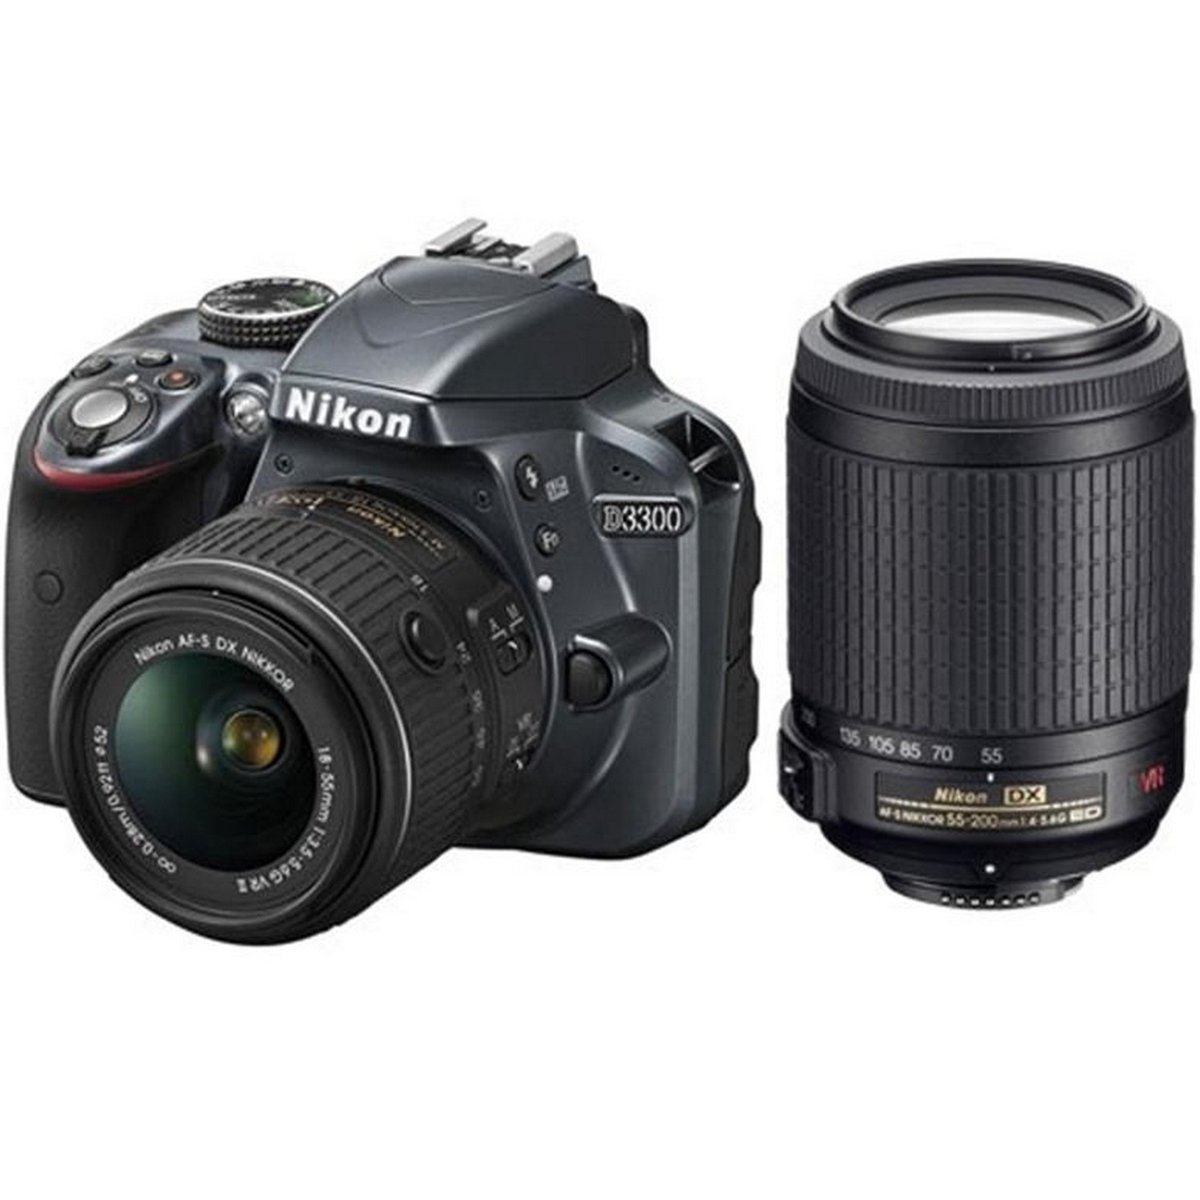 Nikon DSLR Camera D3300 18-55mm VR + 55-200mm NVR